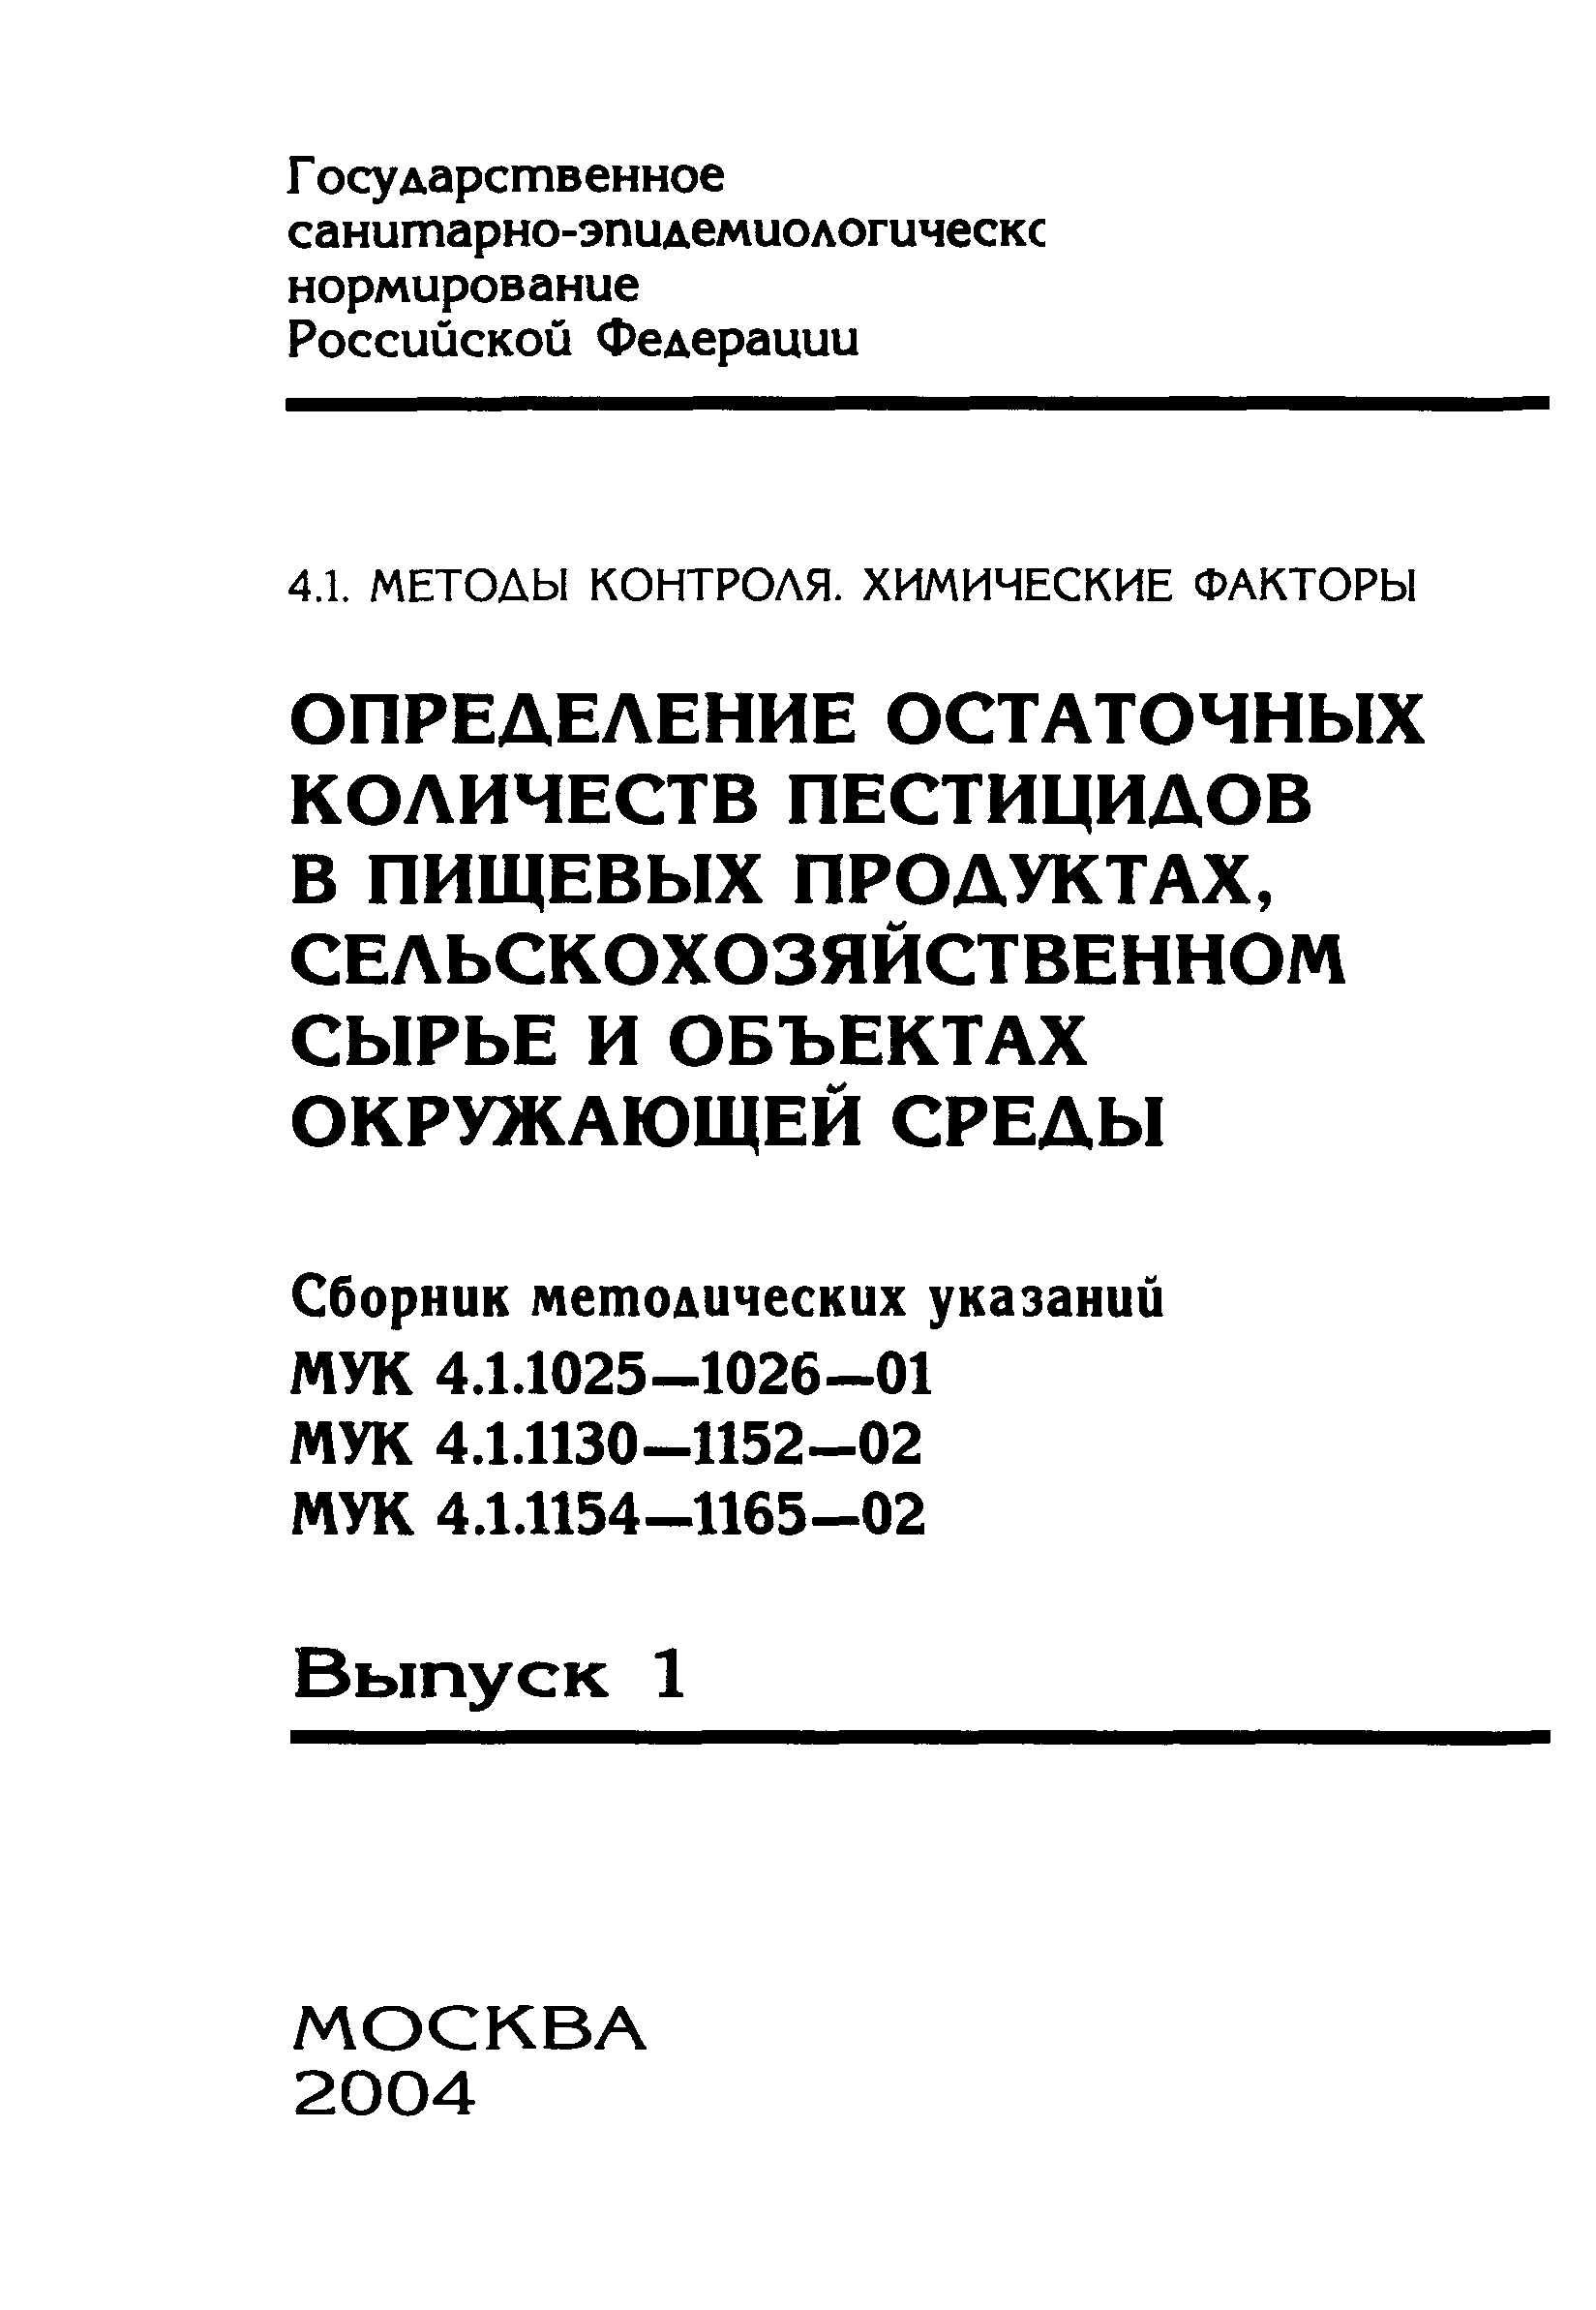 МУК 4.1.1154-02